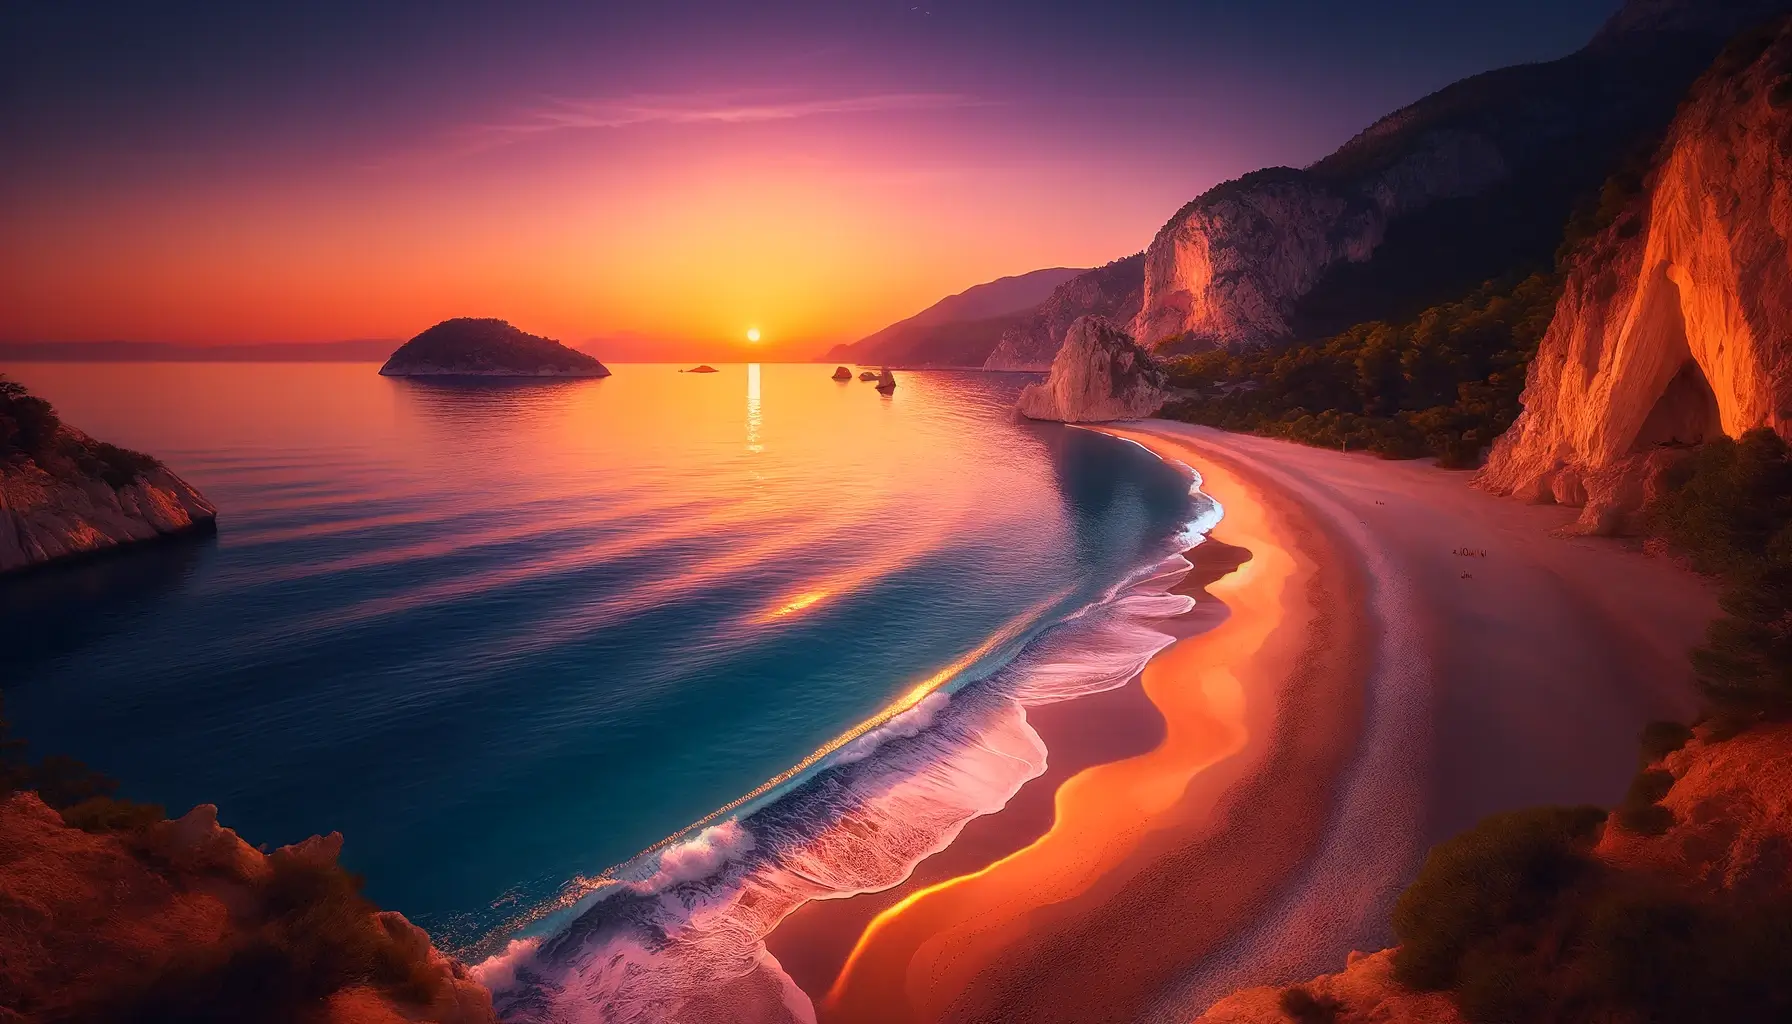 Изображение красивого турецкого пляжа на закате. Потрясающие цвета и безмятежная атмосфера идеально передают суть спокойного вечера у моря.